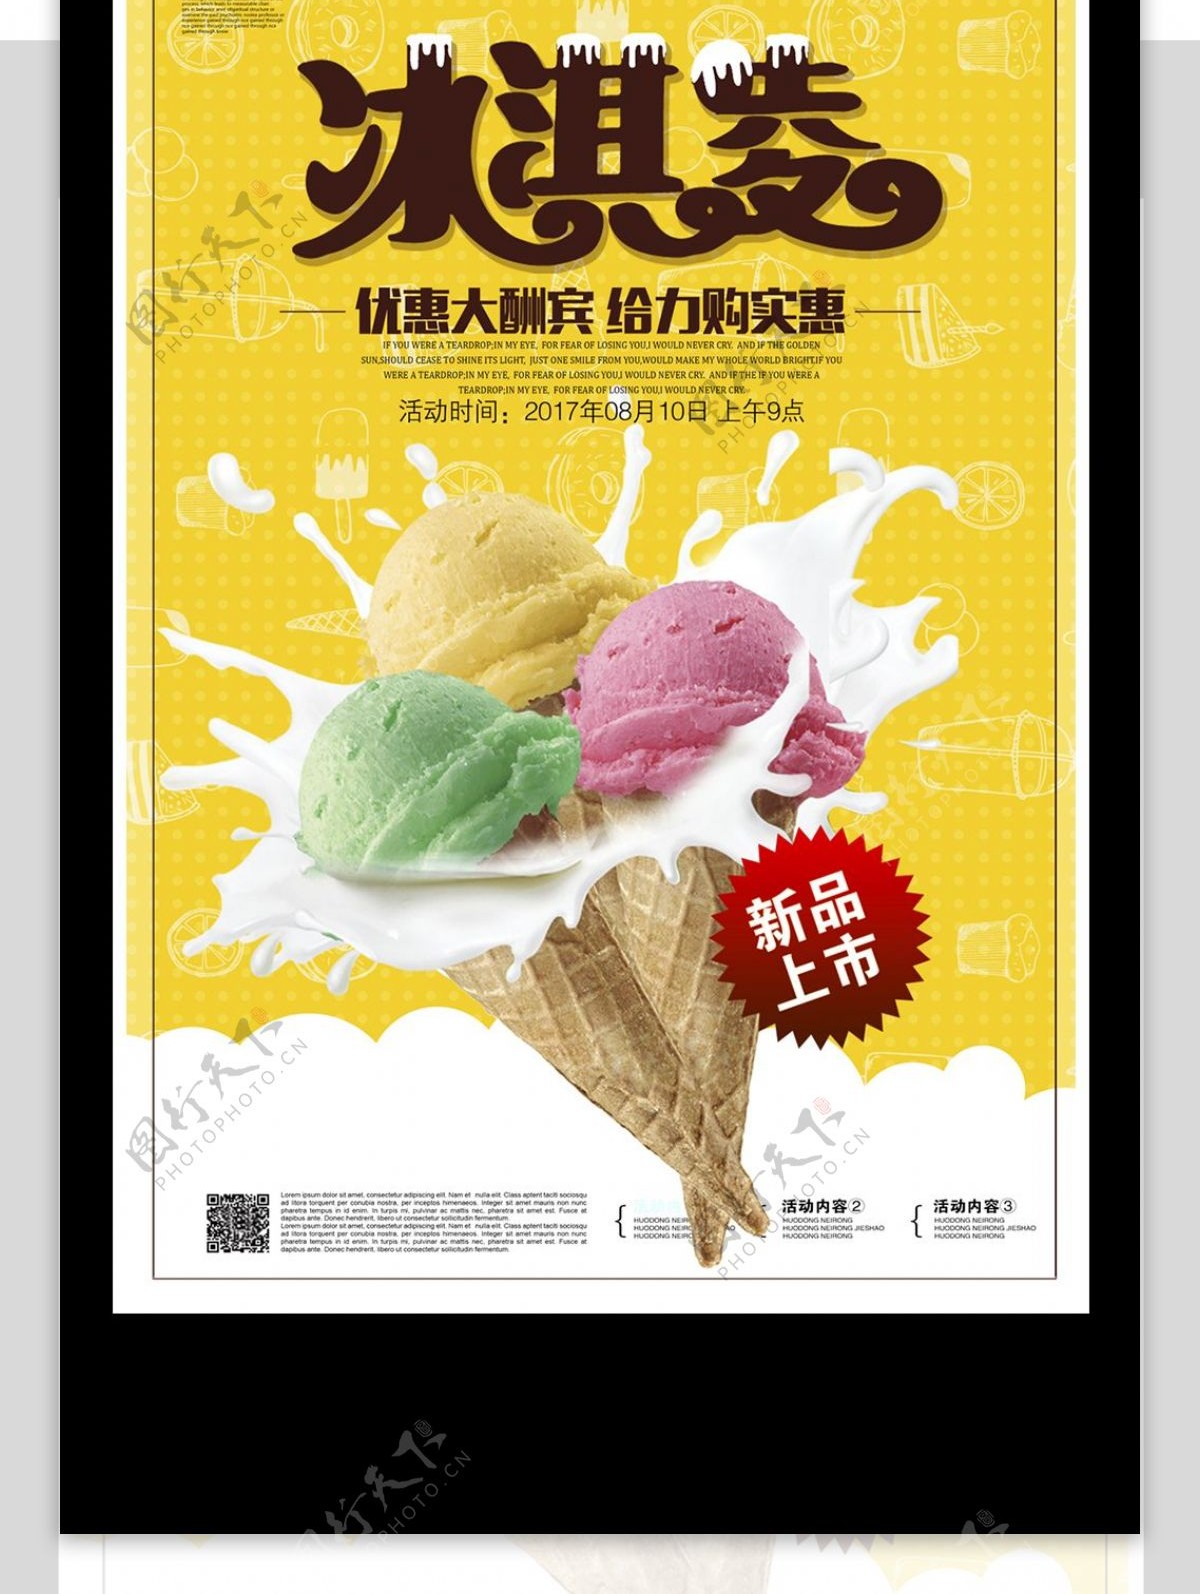 清新时尚冰淇淋活动促销海报